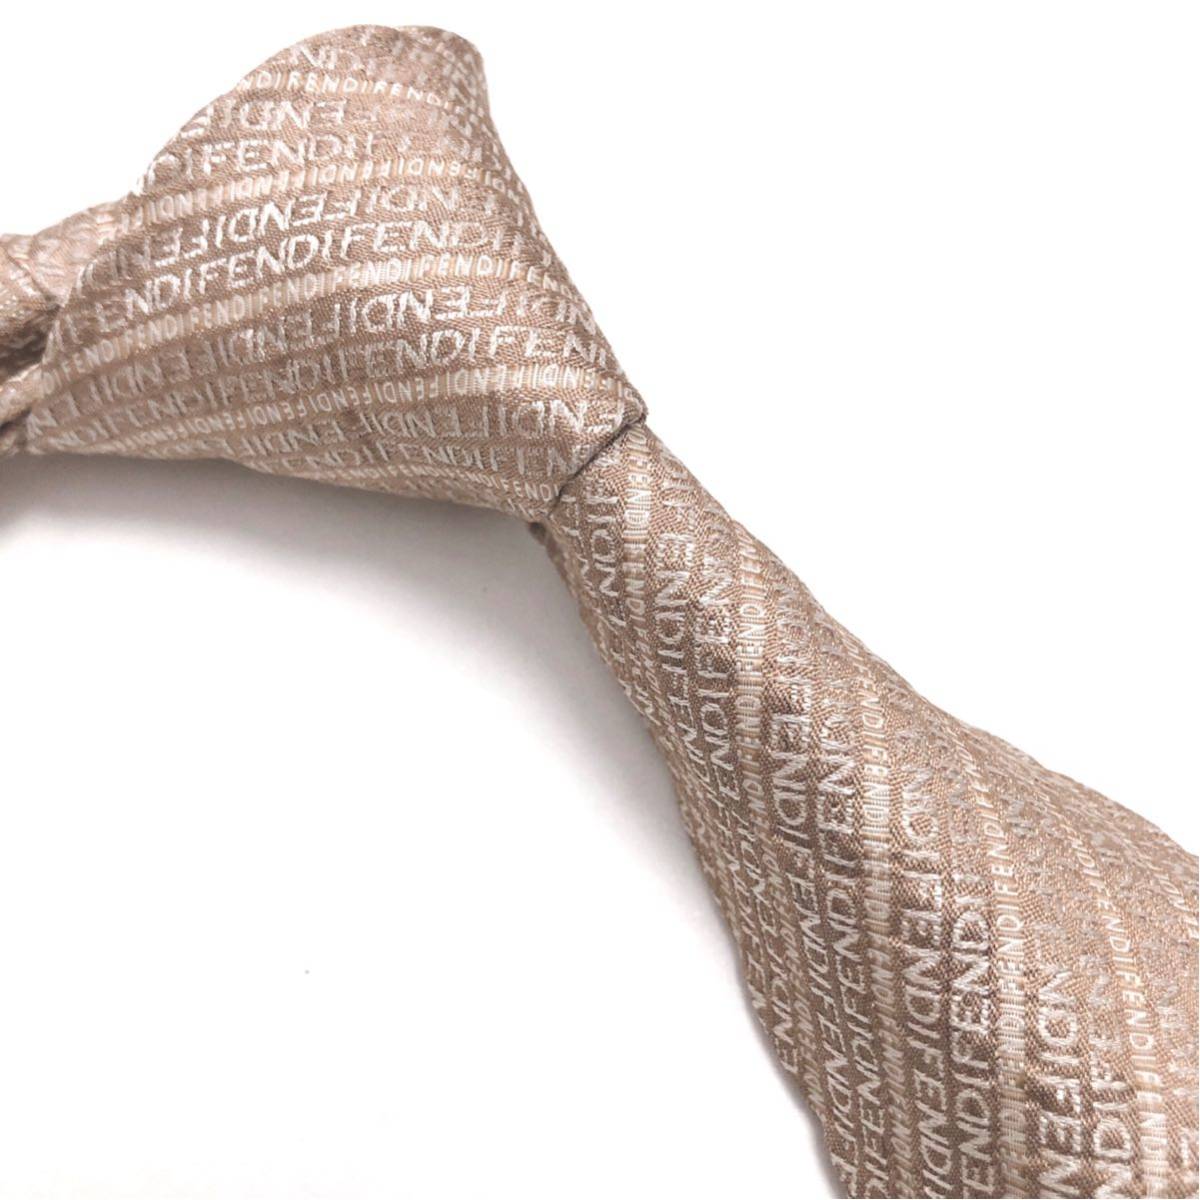 FENDI Fendi прекрасный товар галстук высококлассный шелк Logo грамм FENDI рисунок 